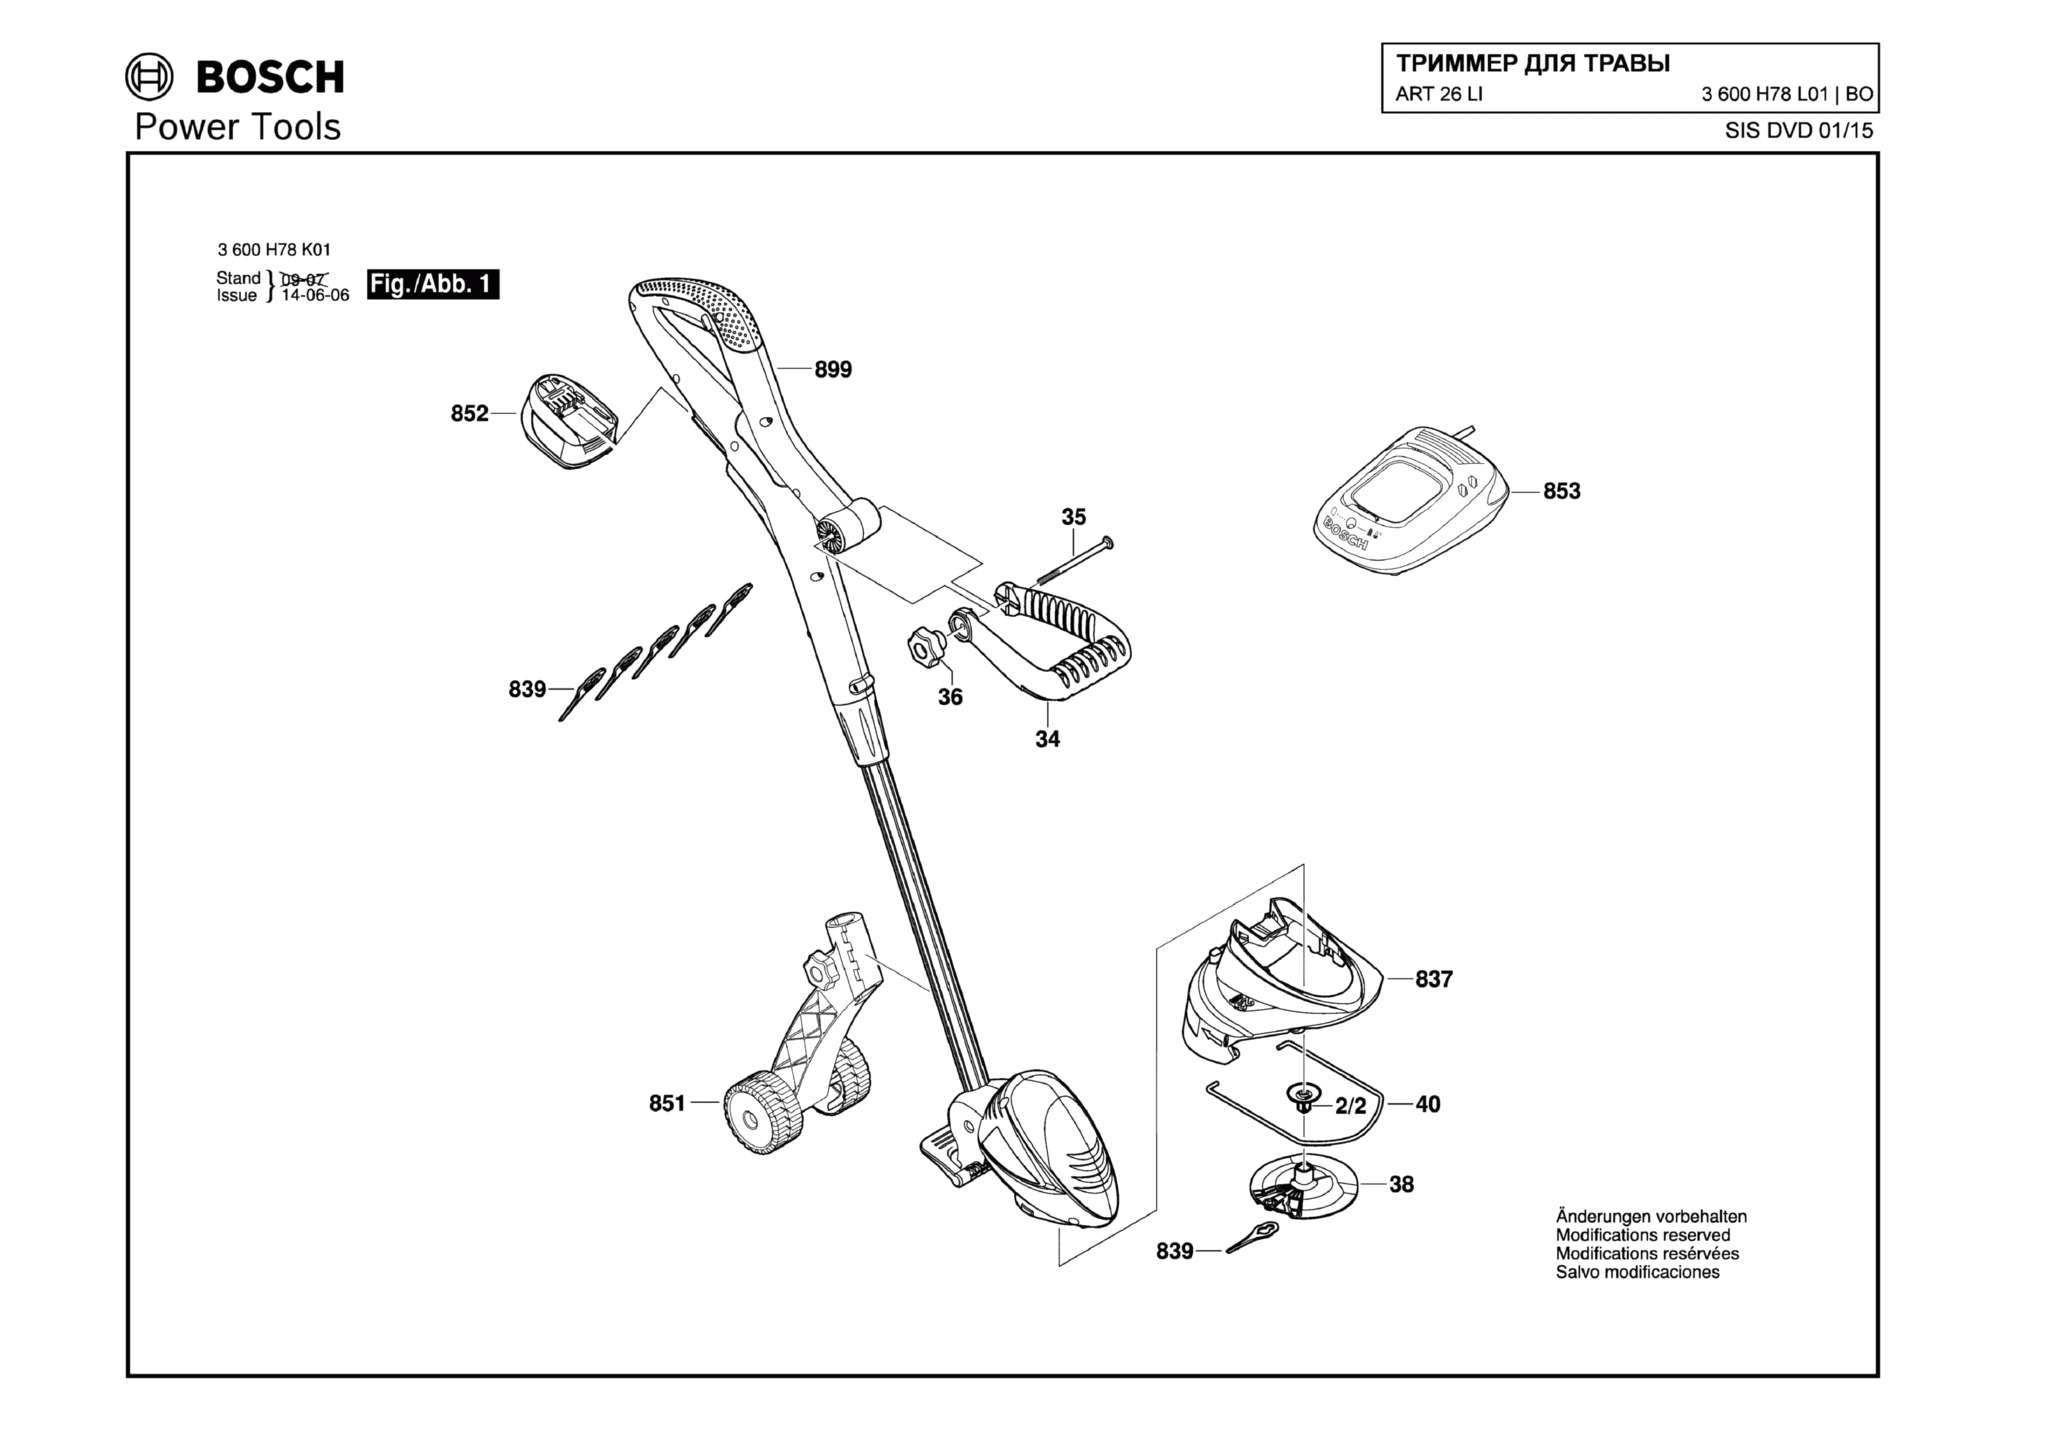 Запчасти, схема и деталировка Bosch ART 26 LI (ТИП 3600H78L01)